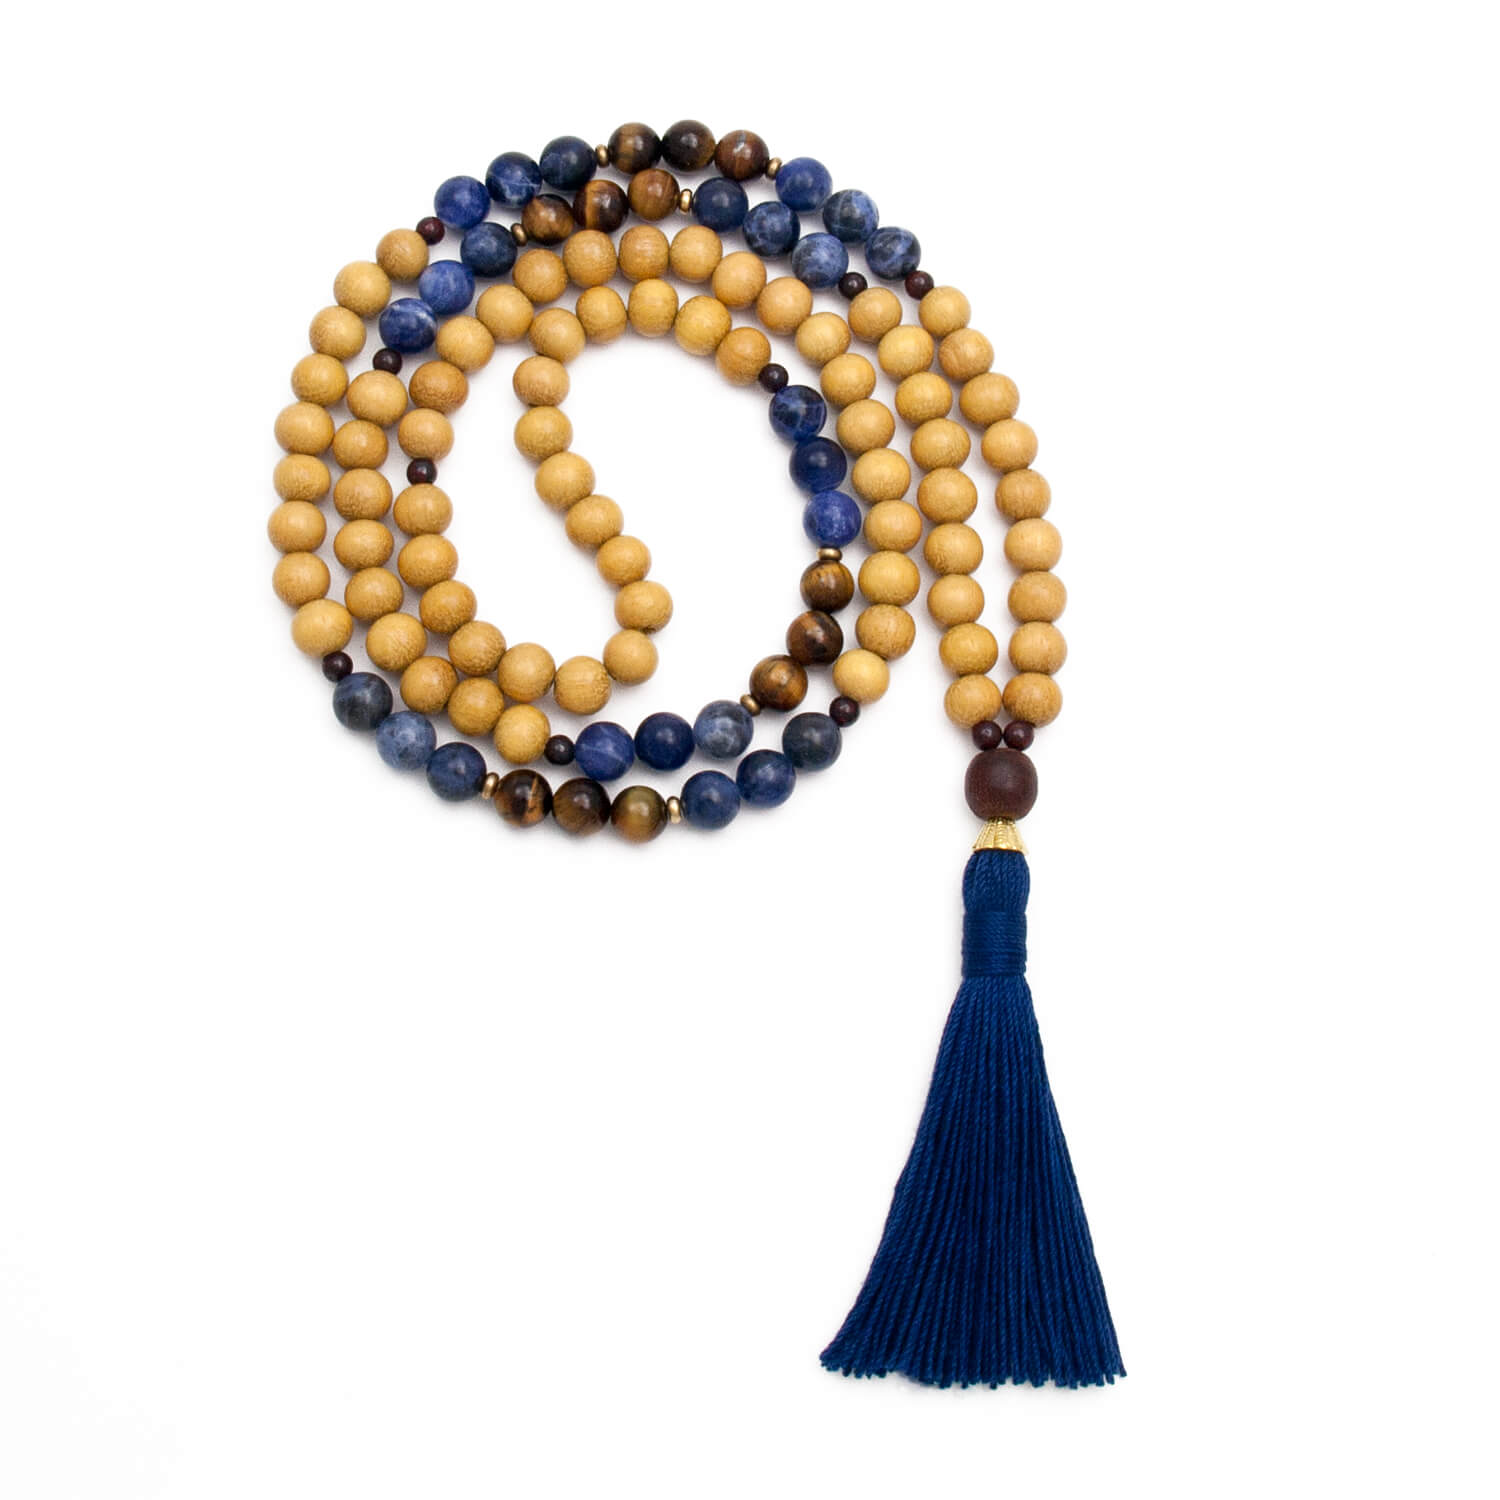 Yellow Meditation Gifts & Mala Beads - Golden Lotus Mala